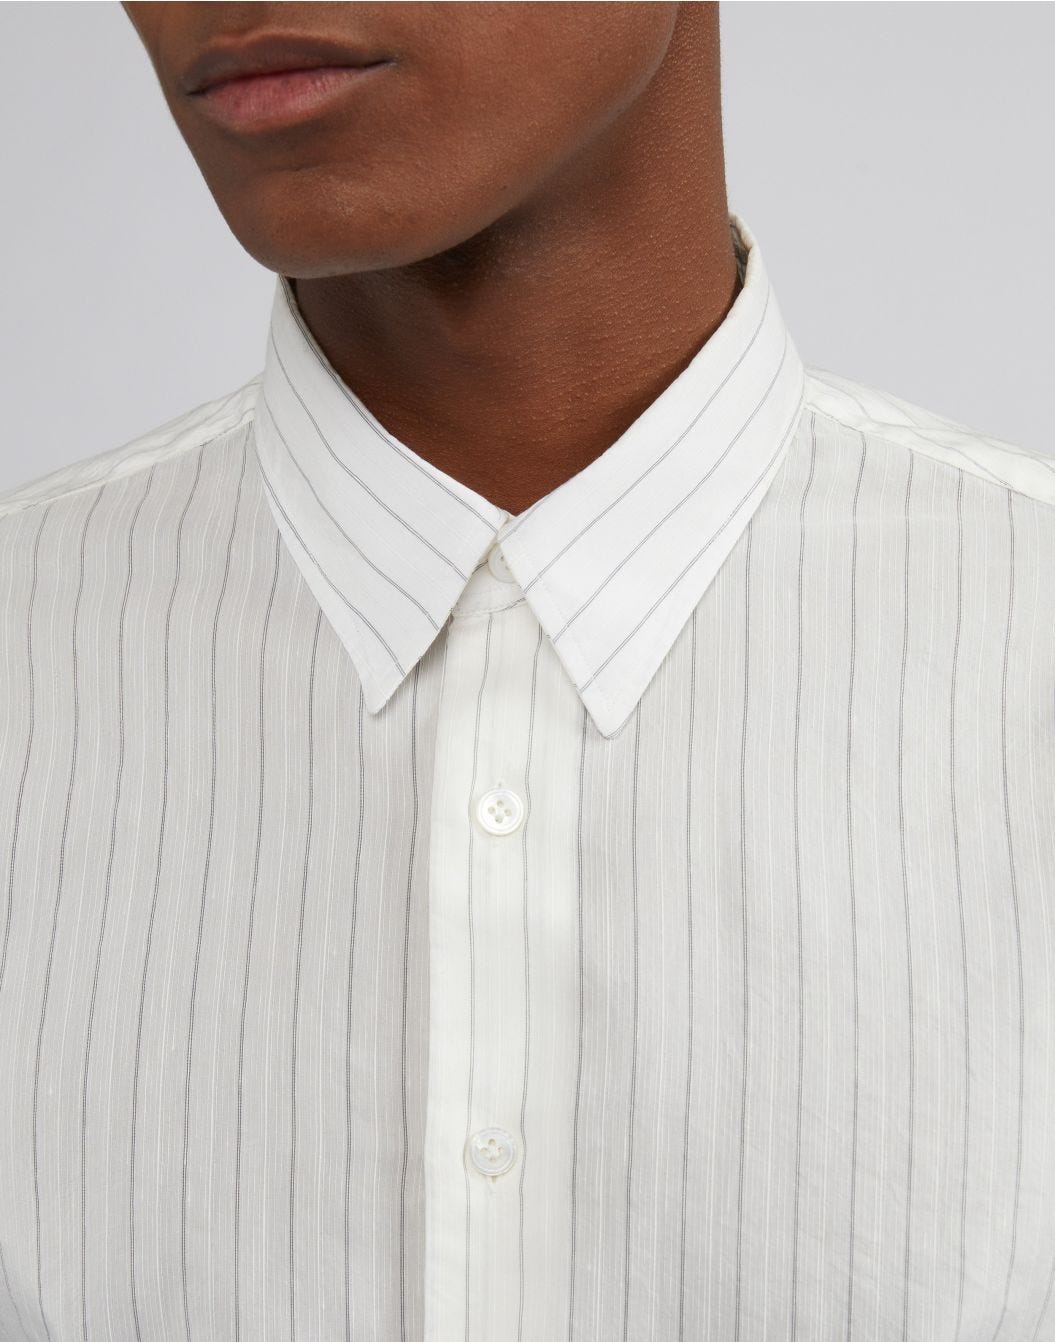 Camicia bianca a righe con collo italiano